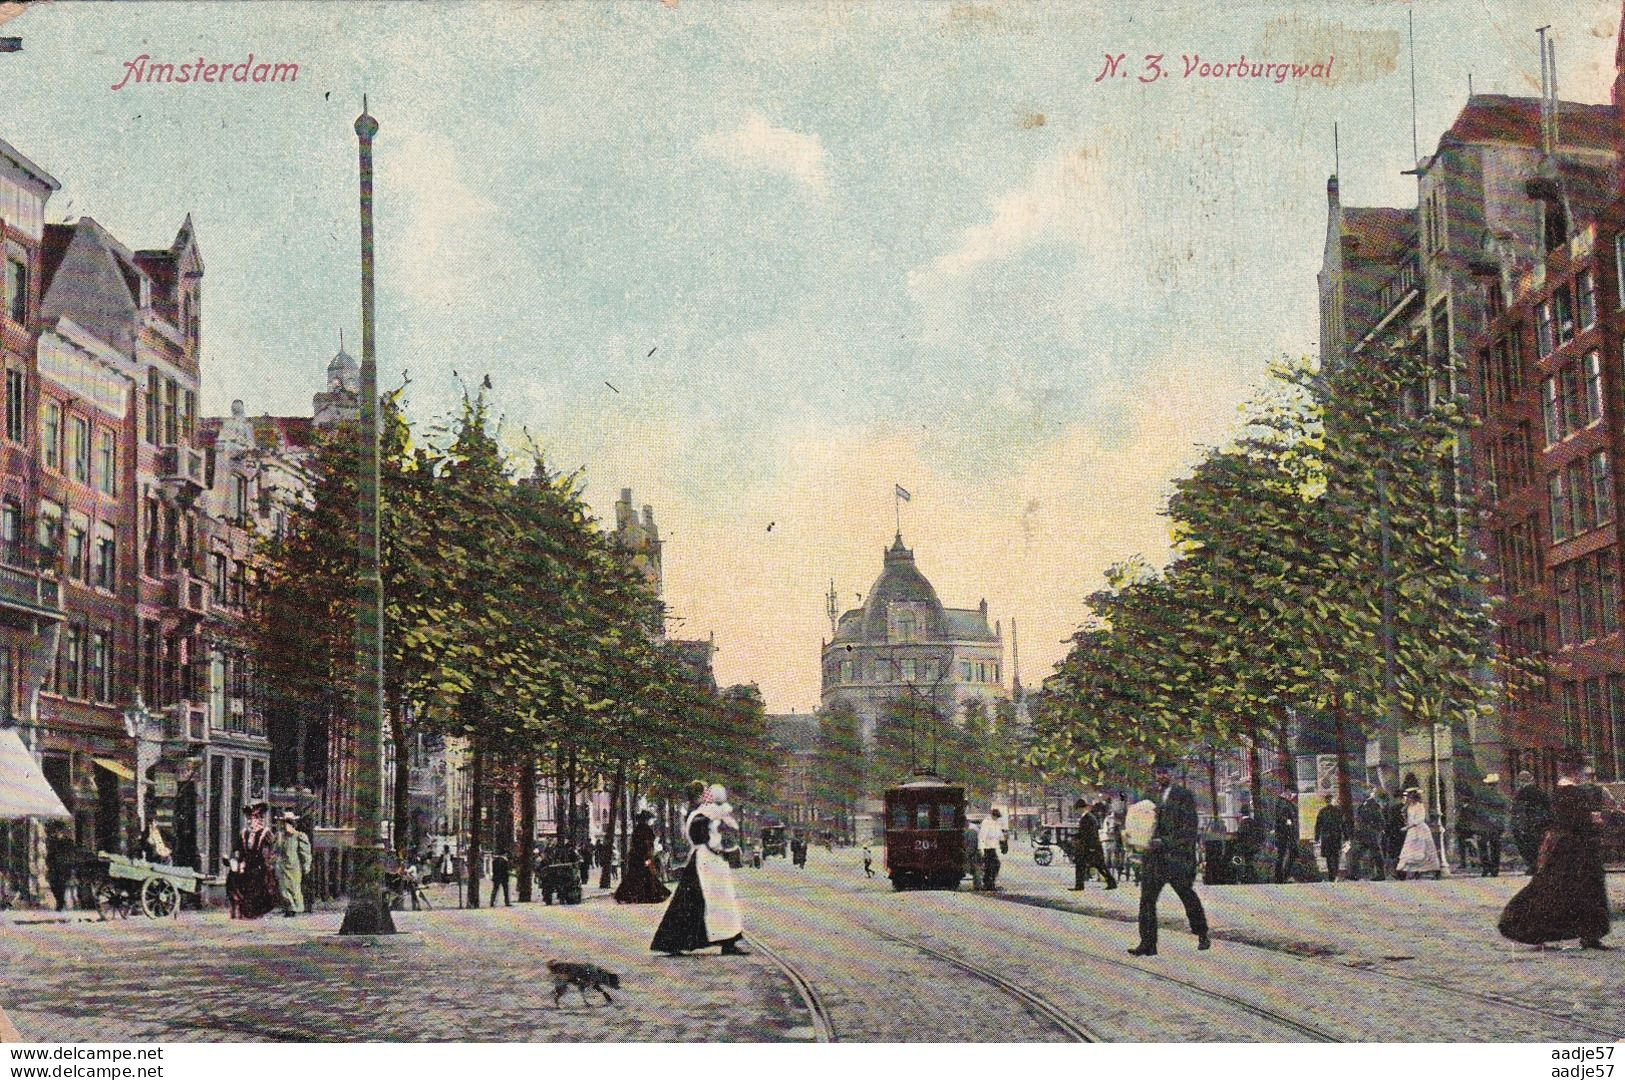 Netherlands Pays Bas Amsterdam N.Z. Voorburgwal Tram 1909 - Tramways